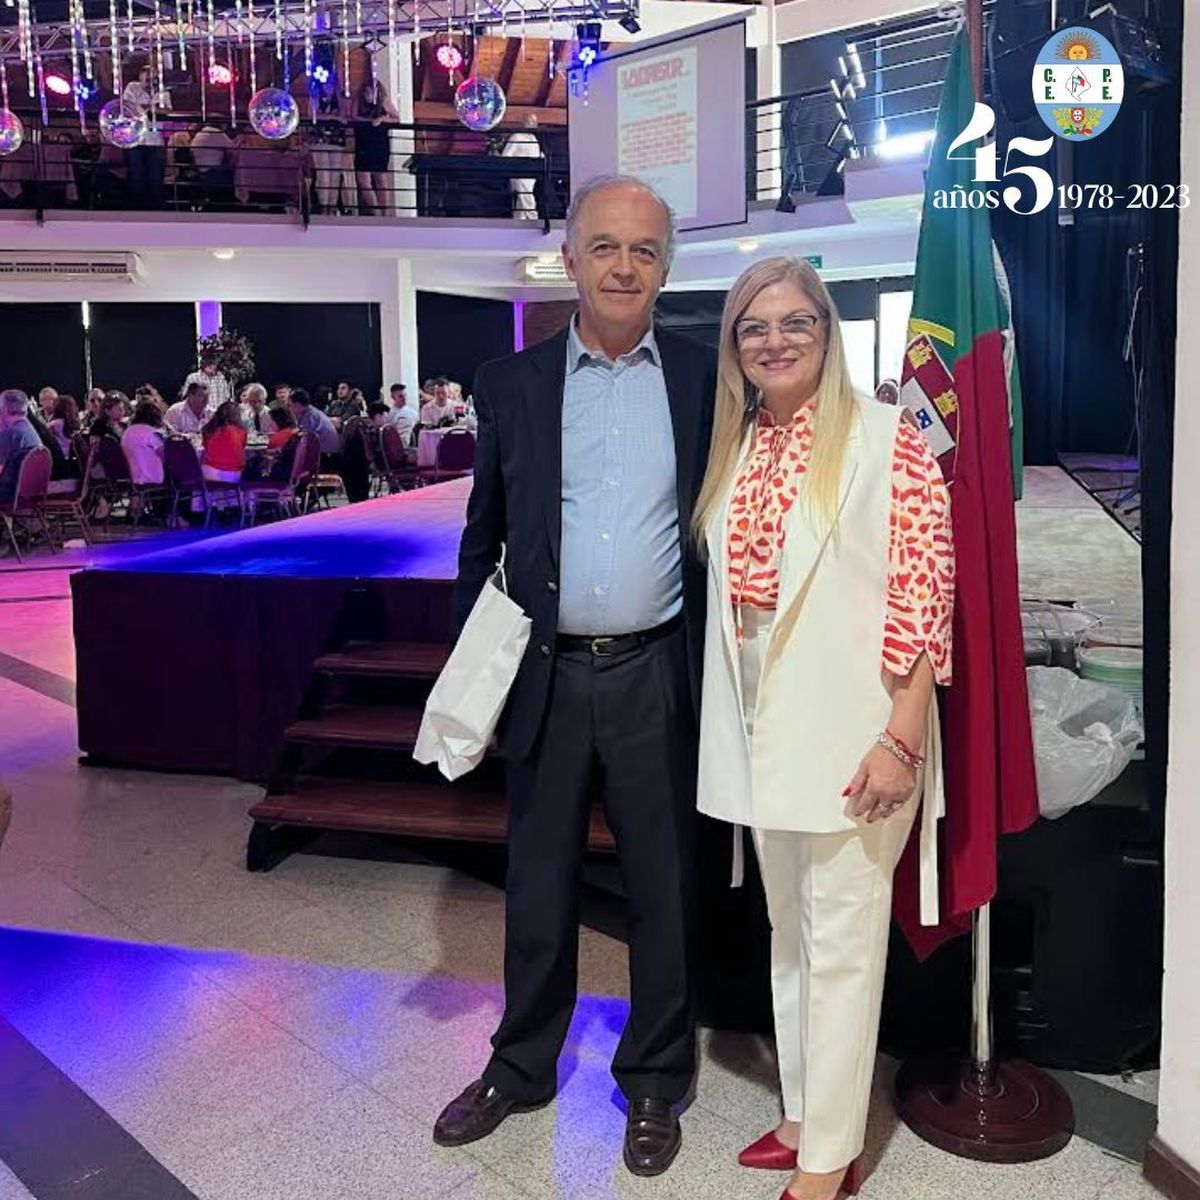 El Club Portugués de Esteban Echeverría festejó sus 45 años de vida